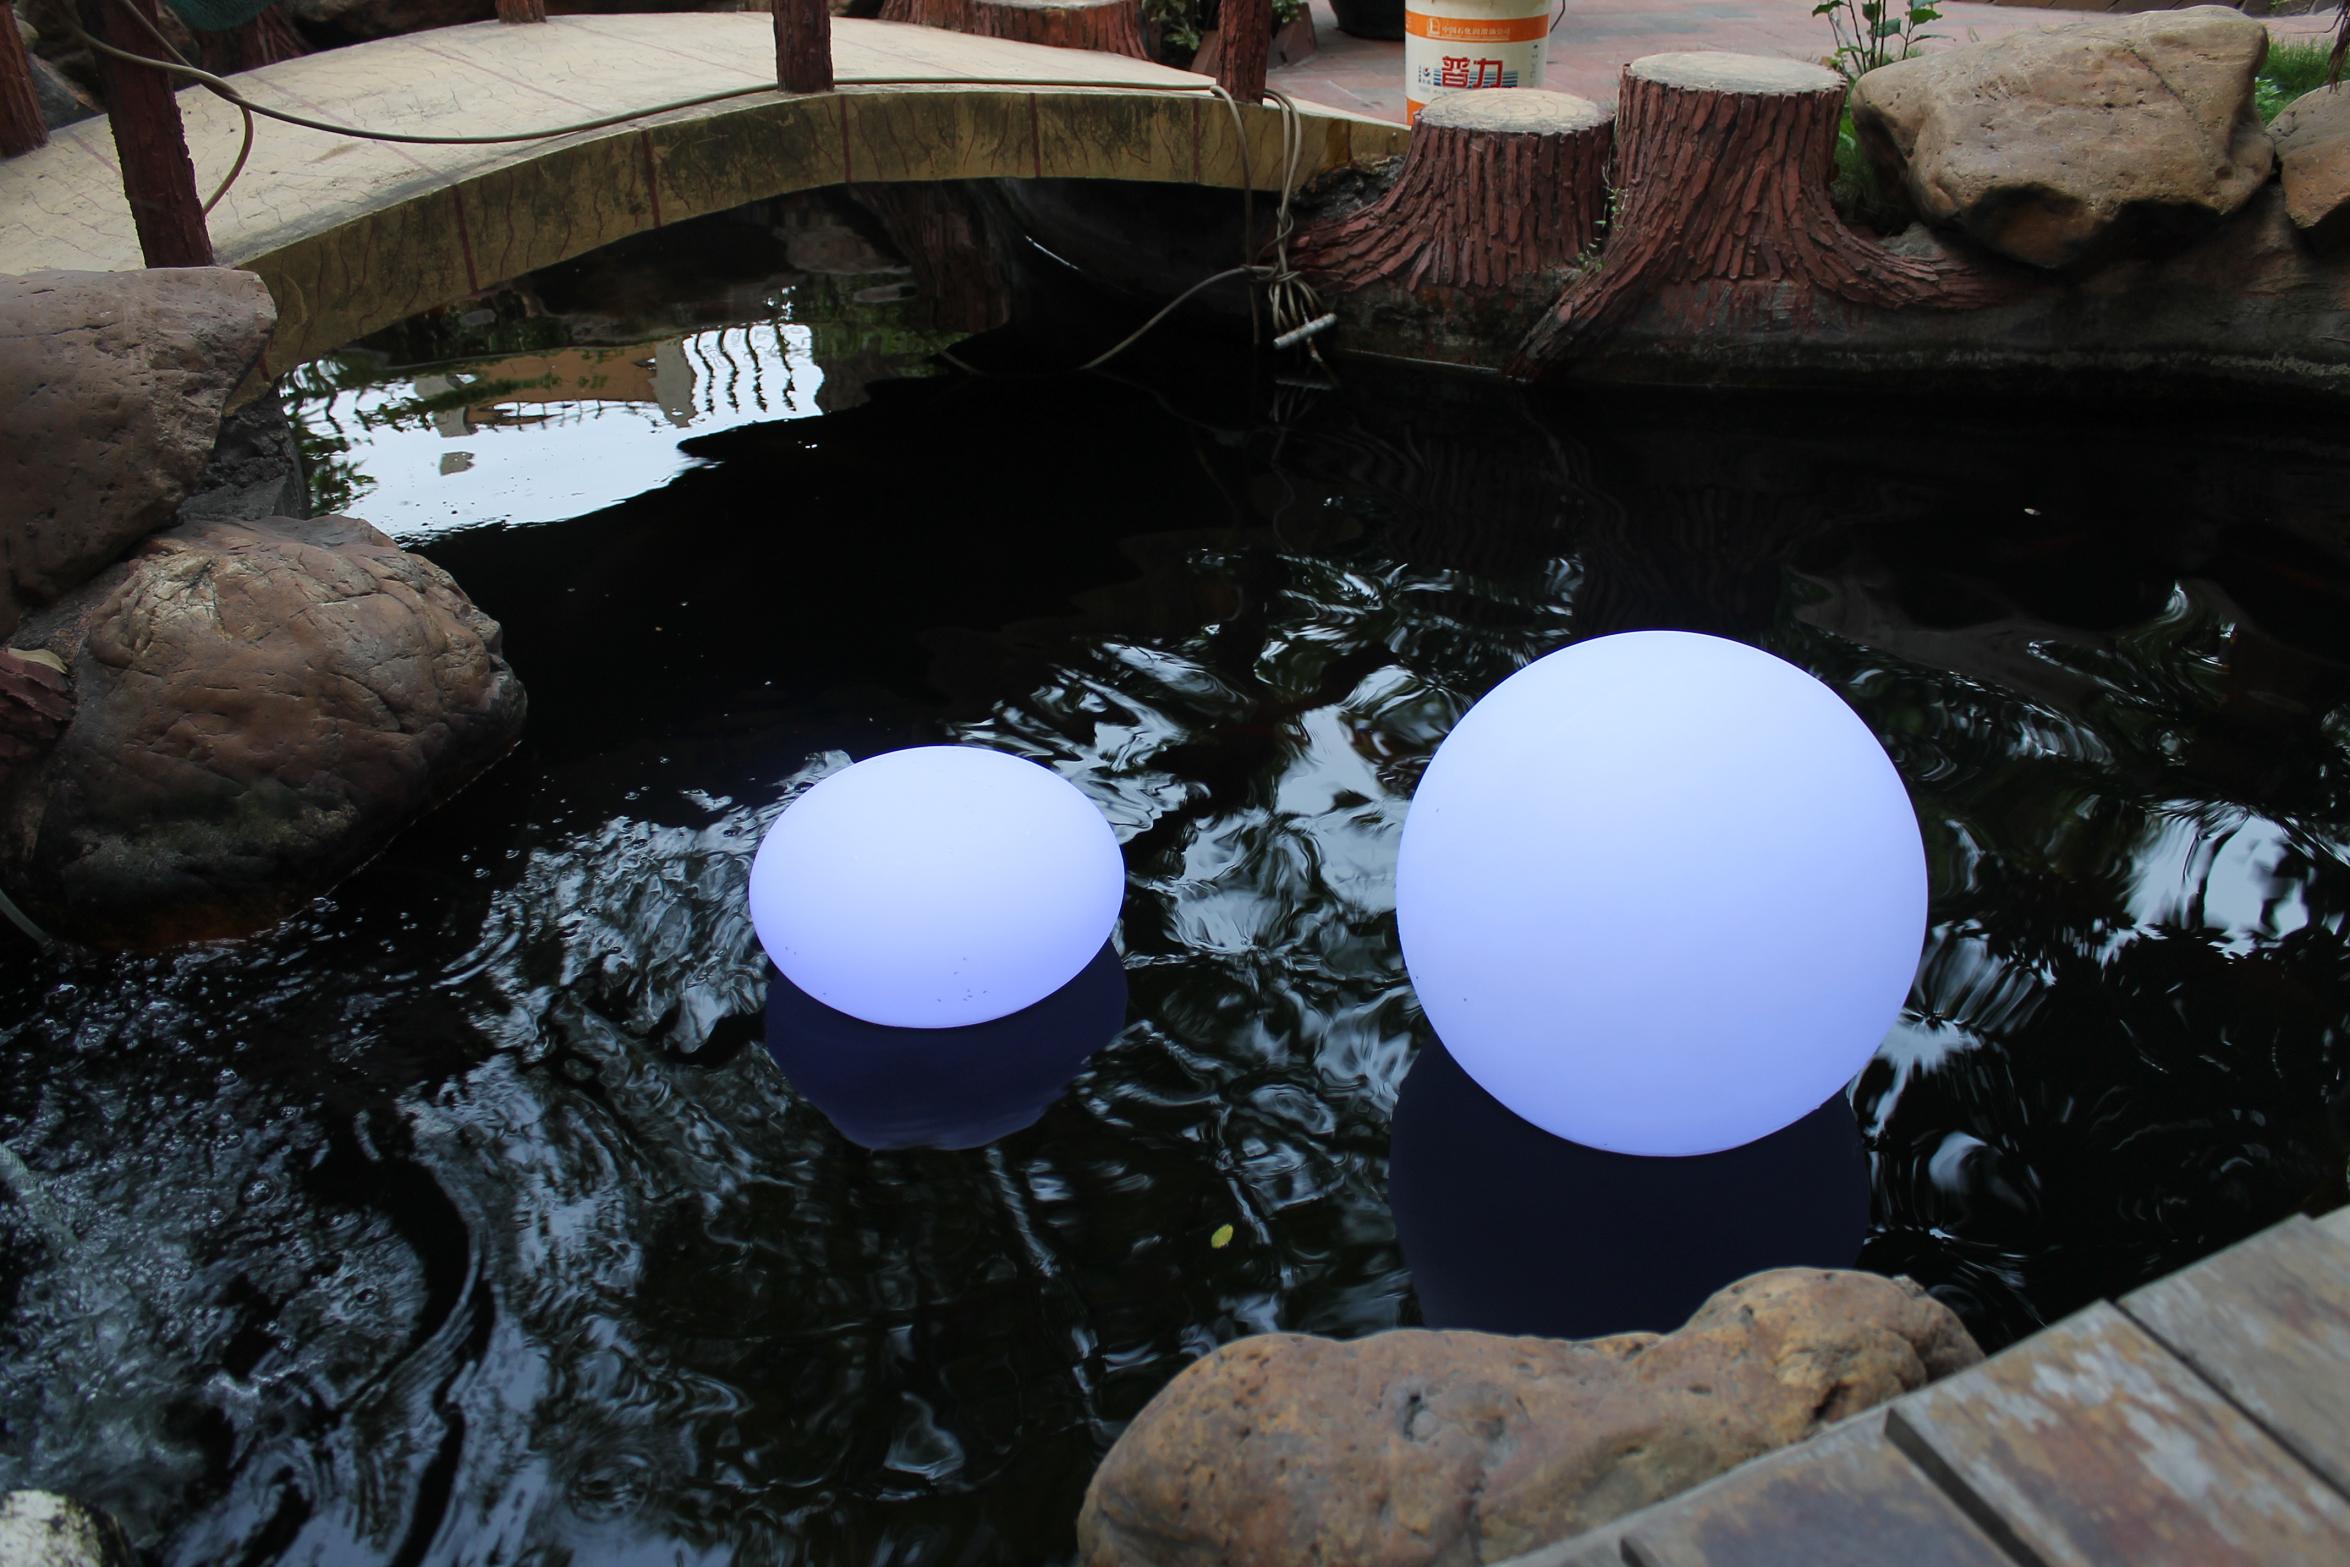 ديكورات توفير الطاقة حدائق في الهواء الطلق LED البيضاوي الكرة (A011)